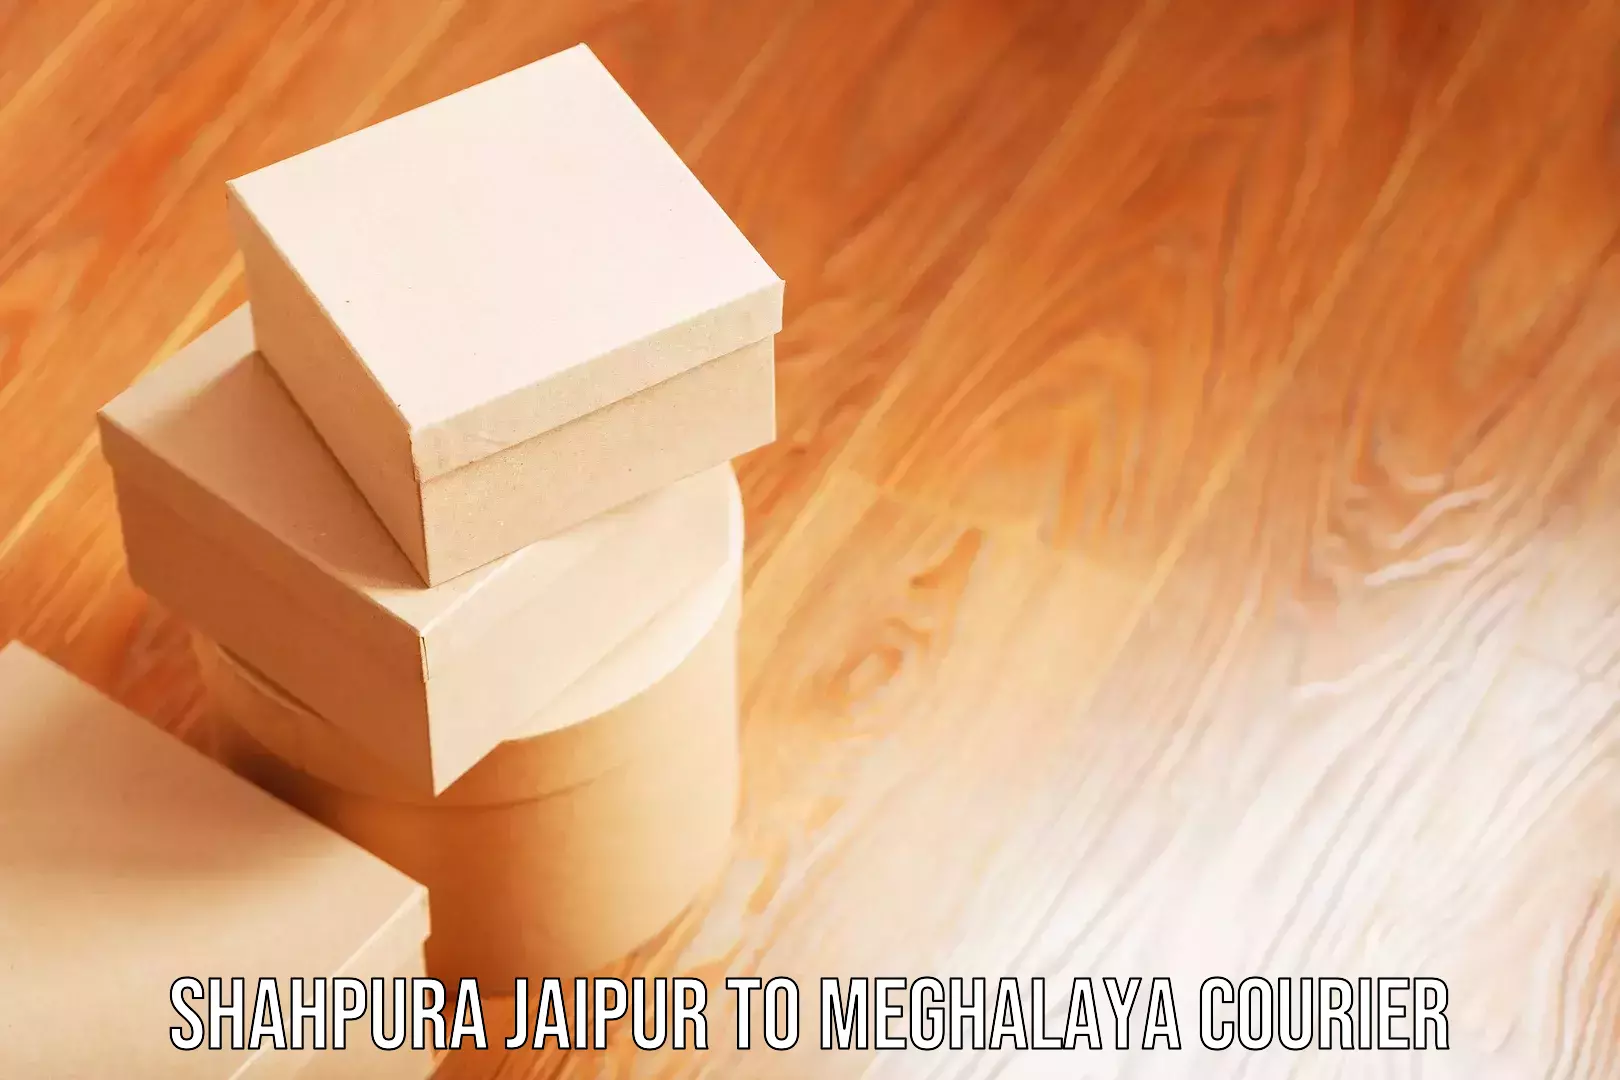 Luggage delivery estimate Shahpura Jaipur to Meghalaya